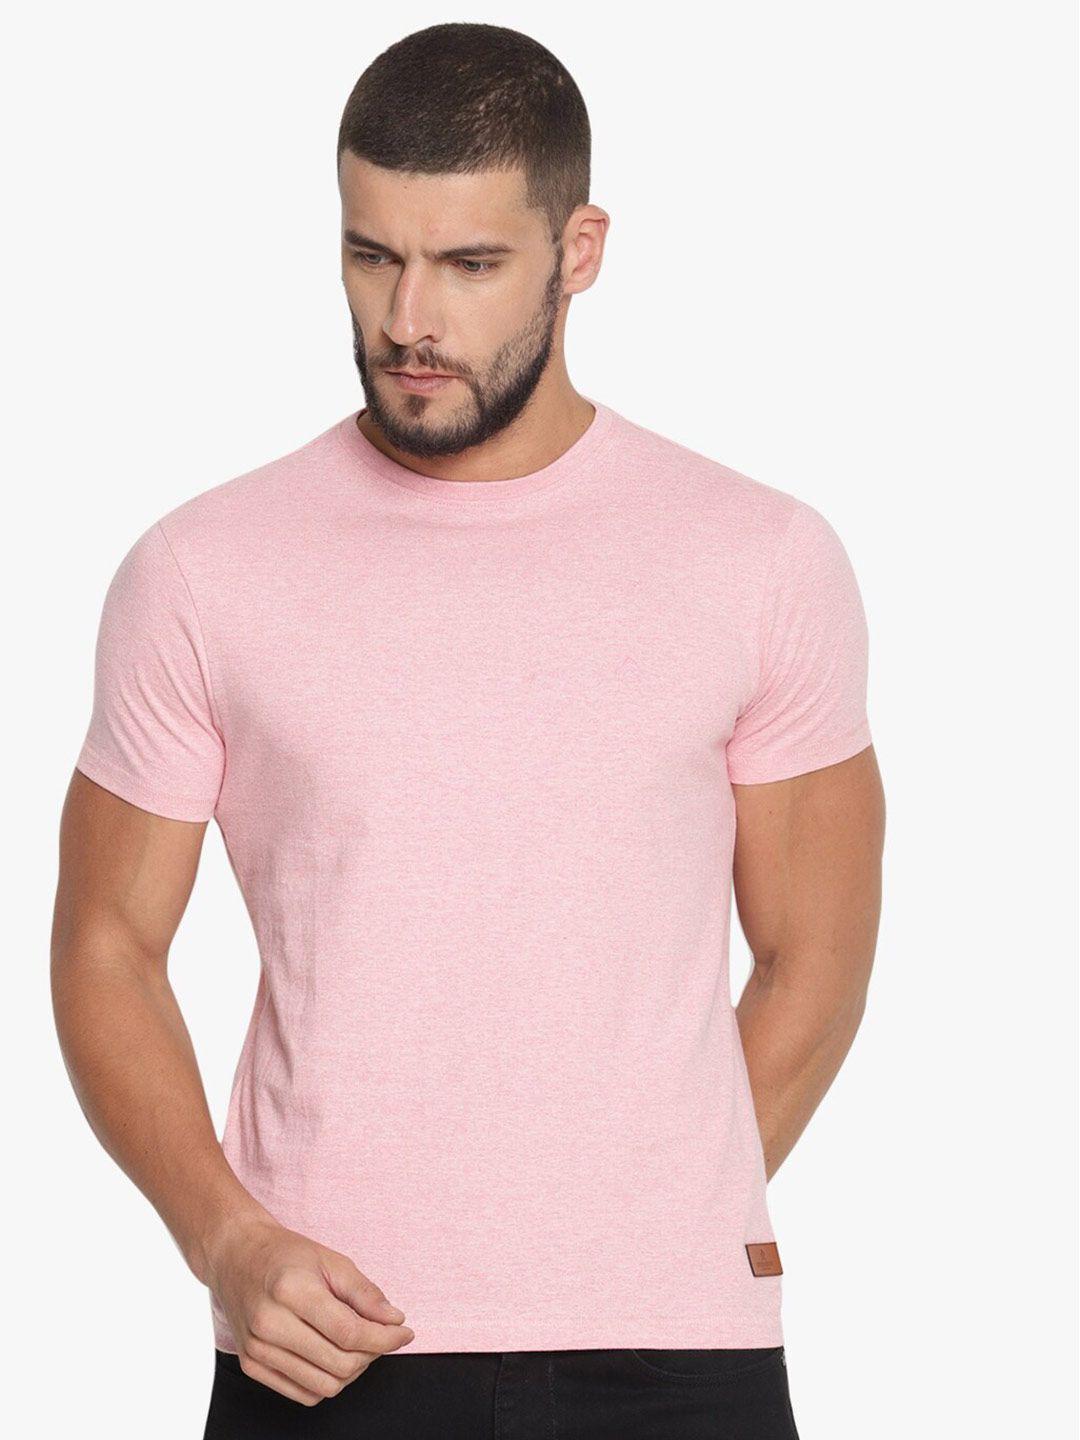 steenbok round neck short sleeve slim fit cotton t-shirt